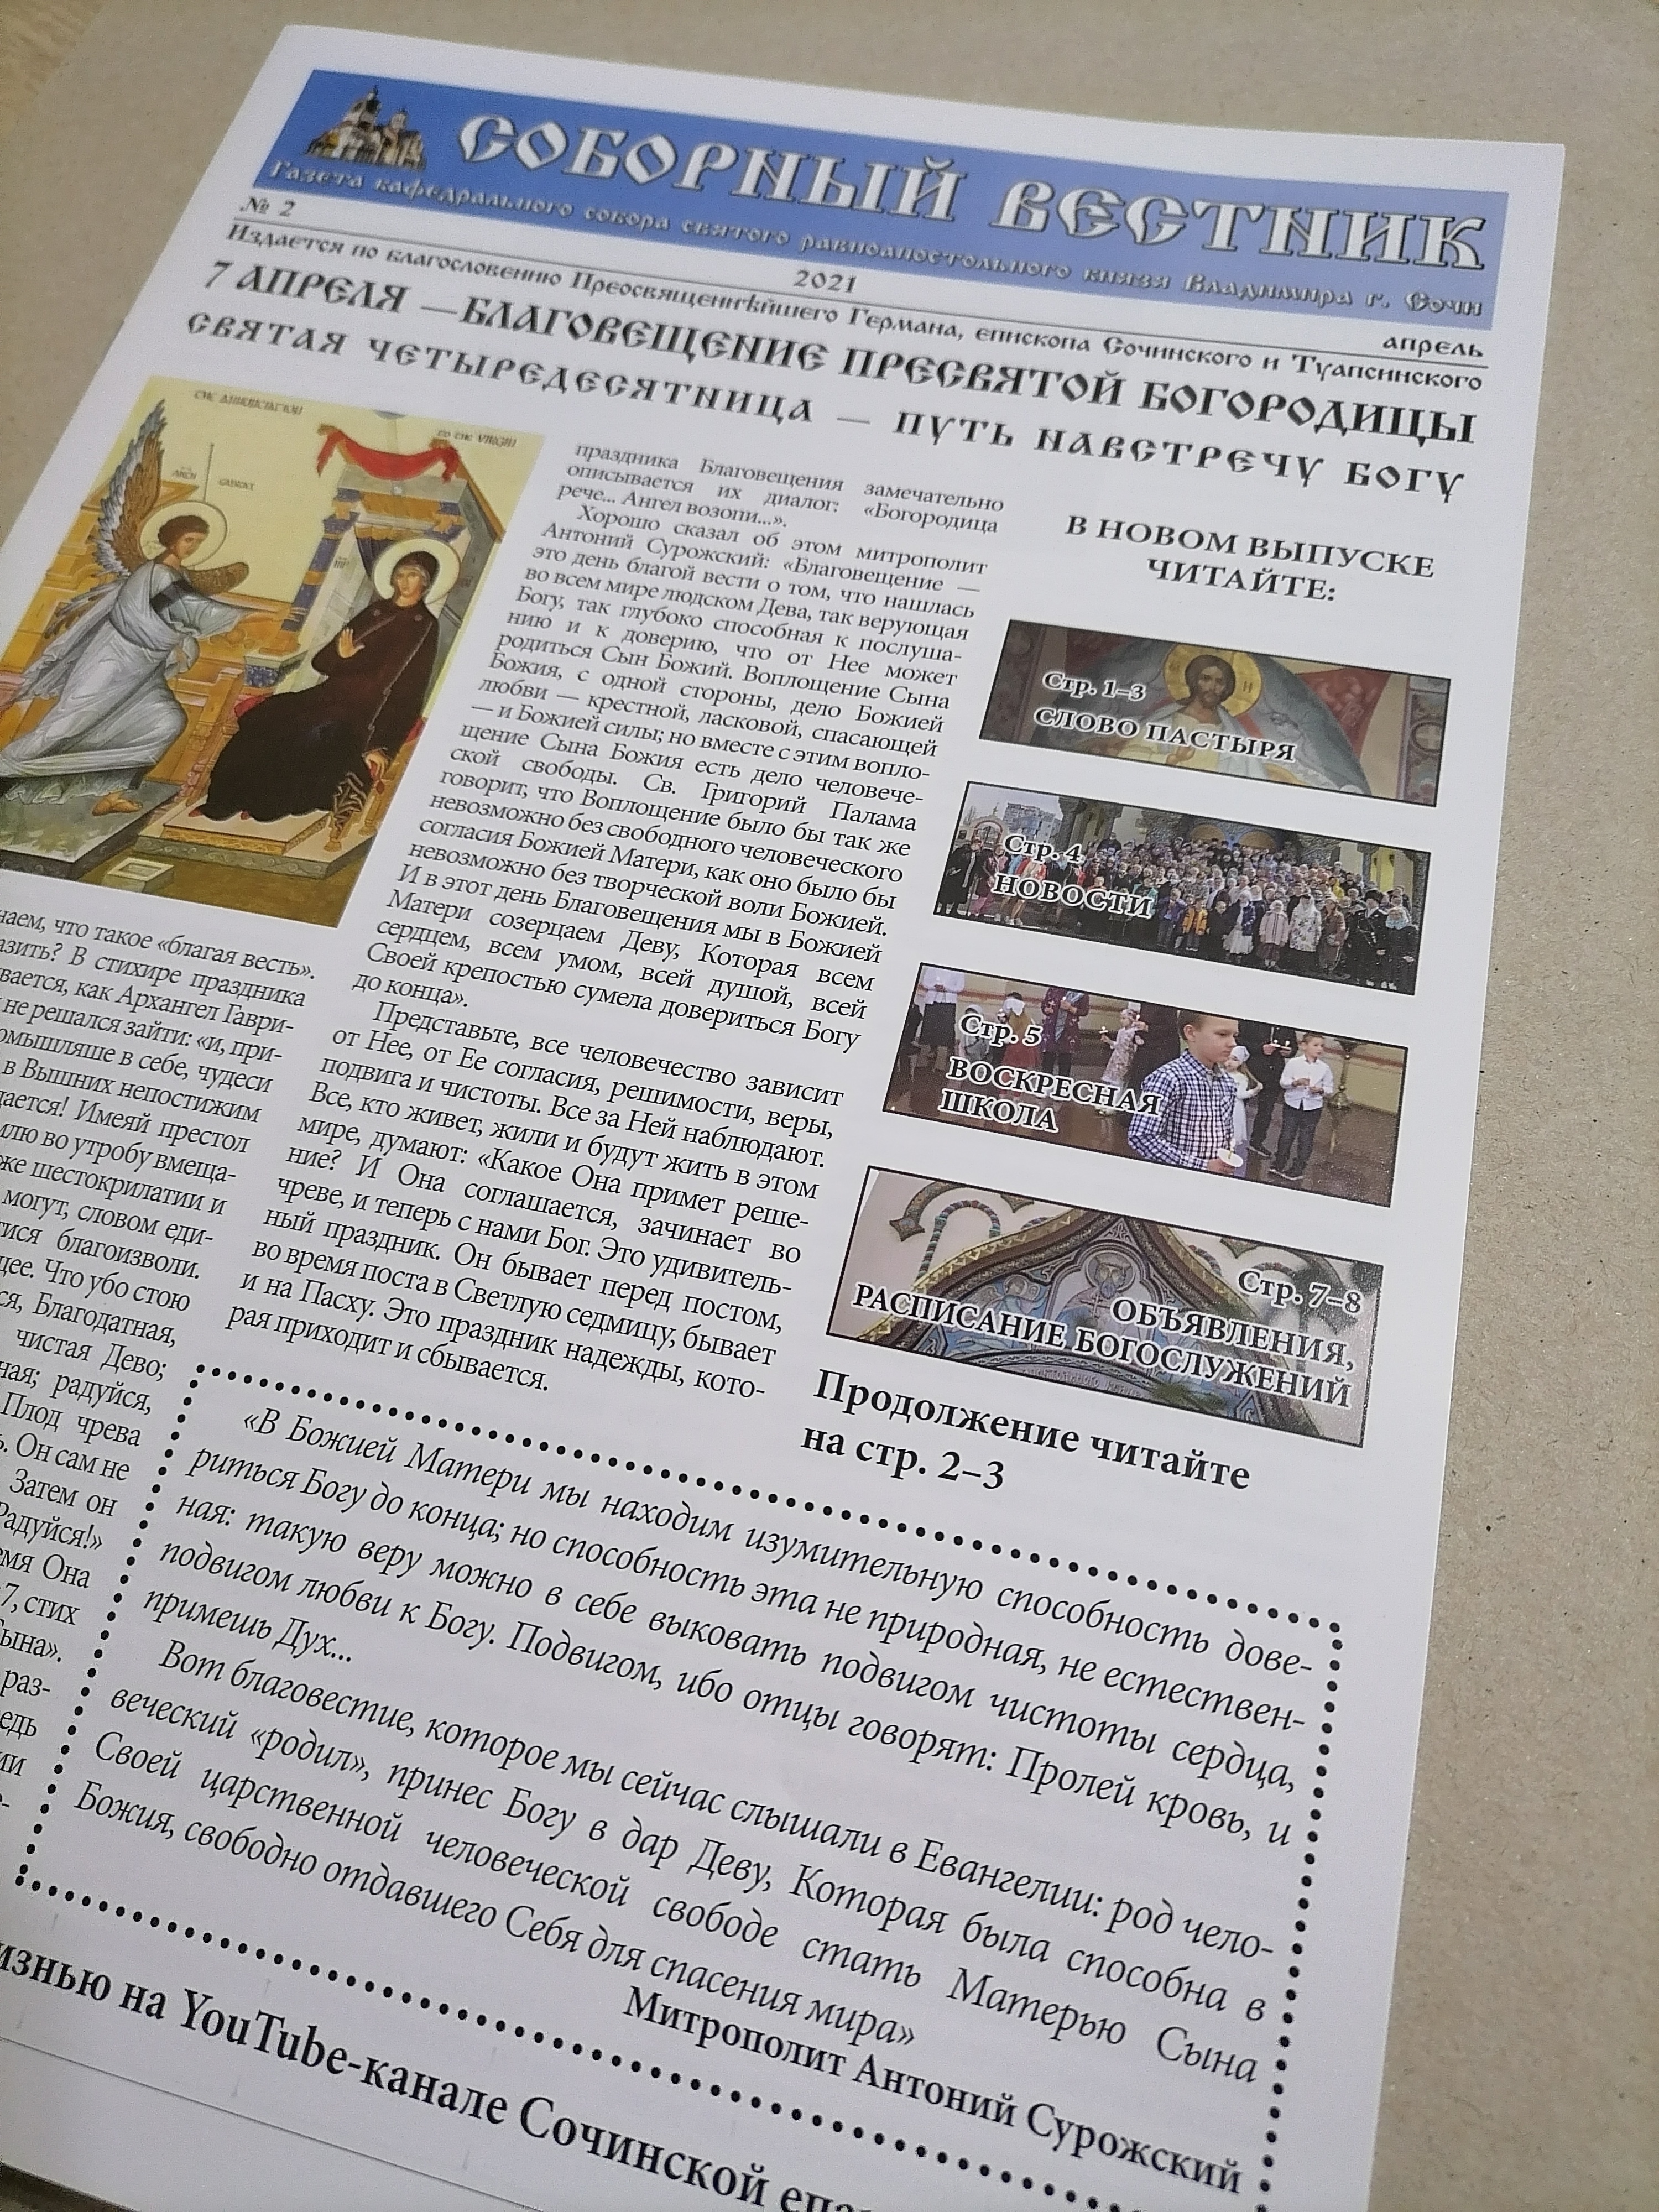 Опубликован второй выпуск приходской газеты "Соборный вестник"